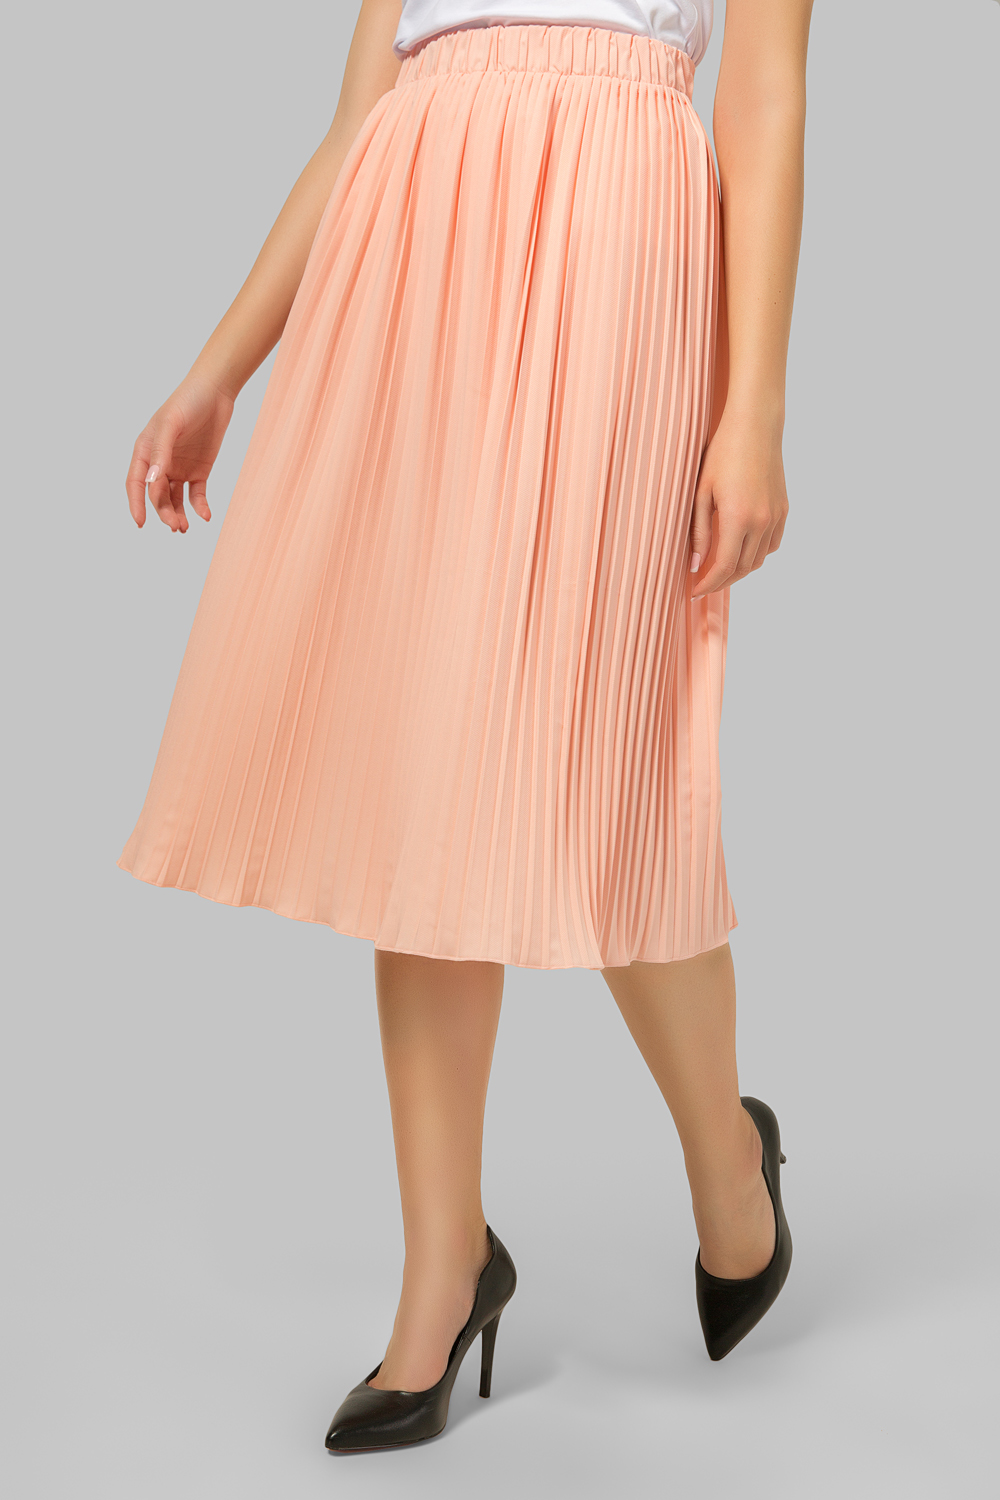 Peach pleated skirt